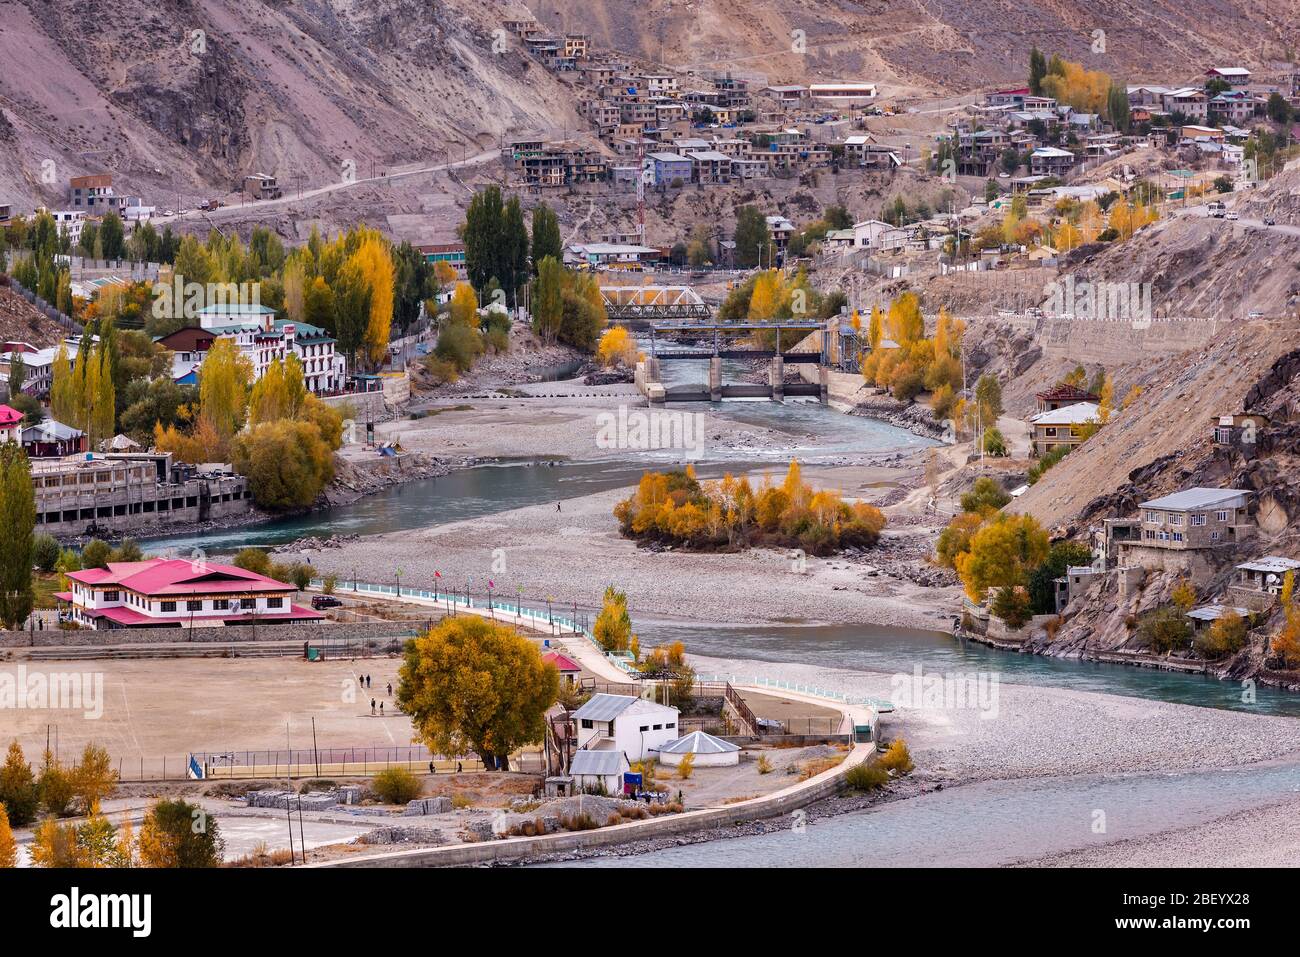 Die Stadt LEH ist eine Stadt im Distrikt LEH des indischen Bundesstaats Jammu und Kashmir. Sie war die Hauptstadt des Himalaya-Königreichs Ladakh. Stockfoto